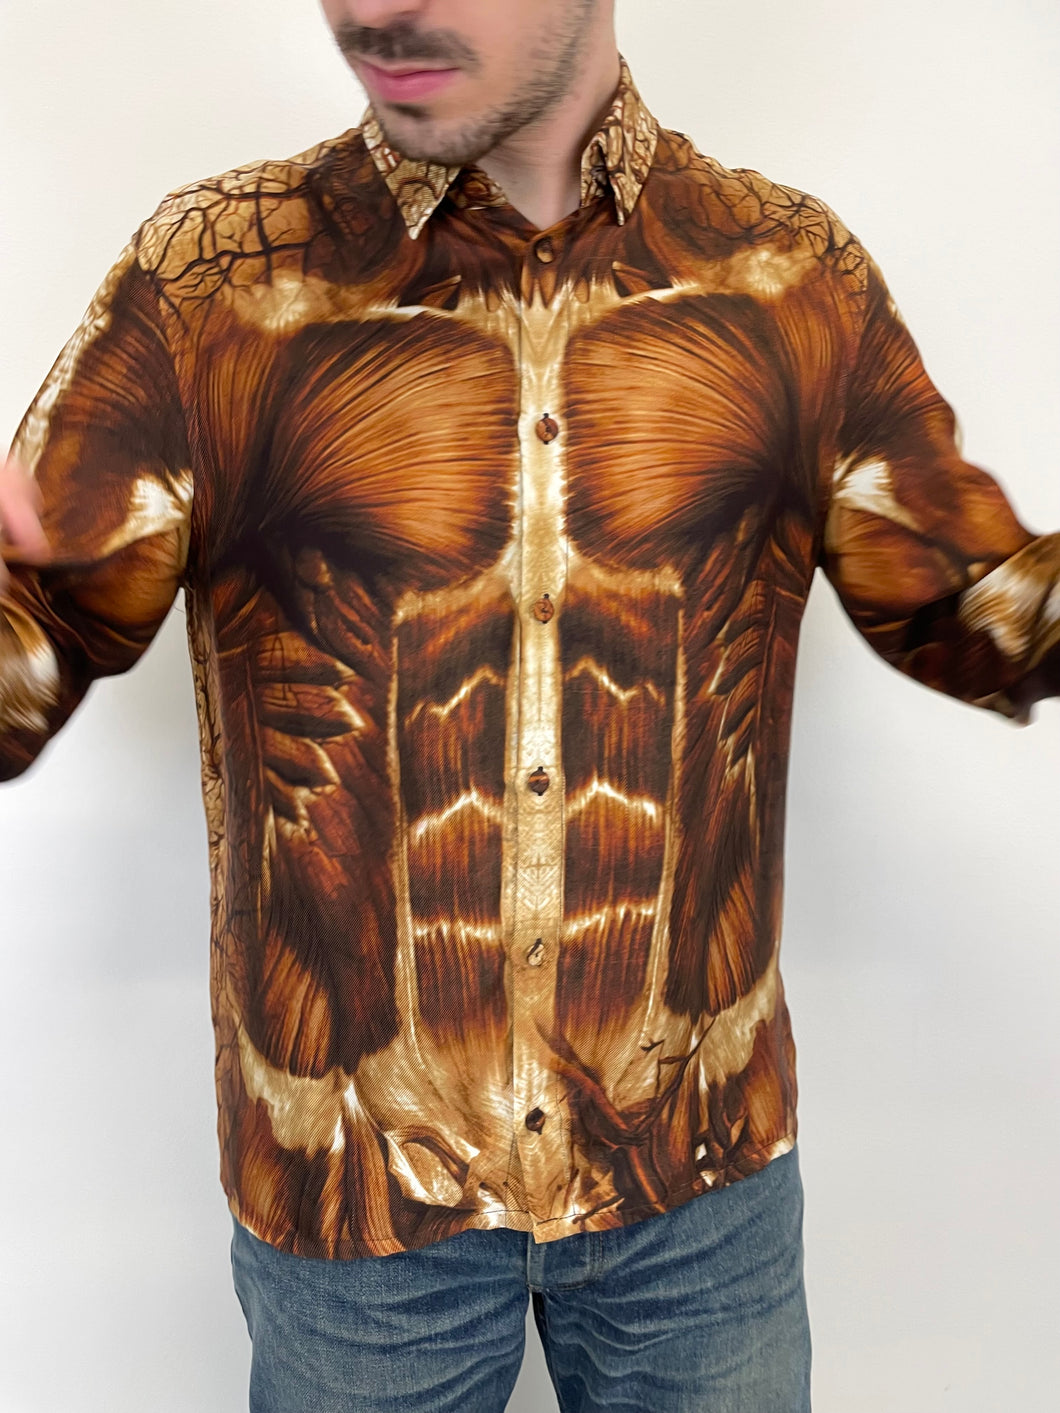 AW2010 Jean Paul Gaultier Muscle trompe l'oeil
shirt